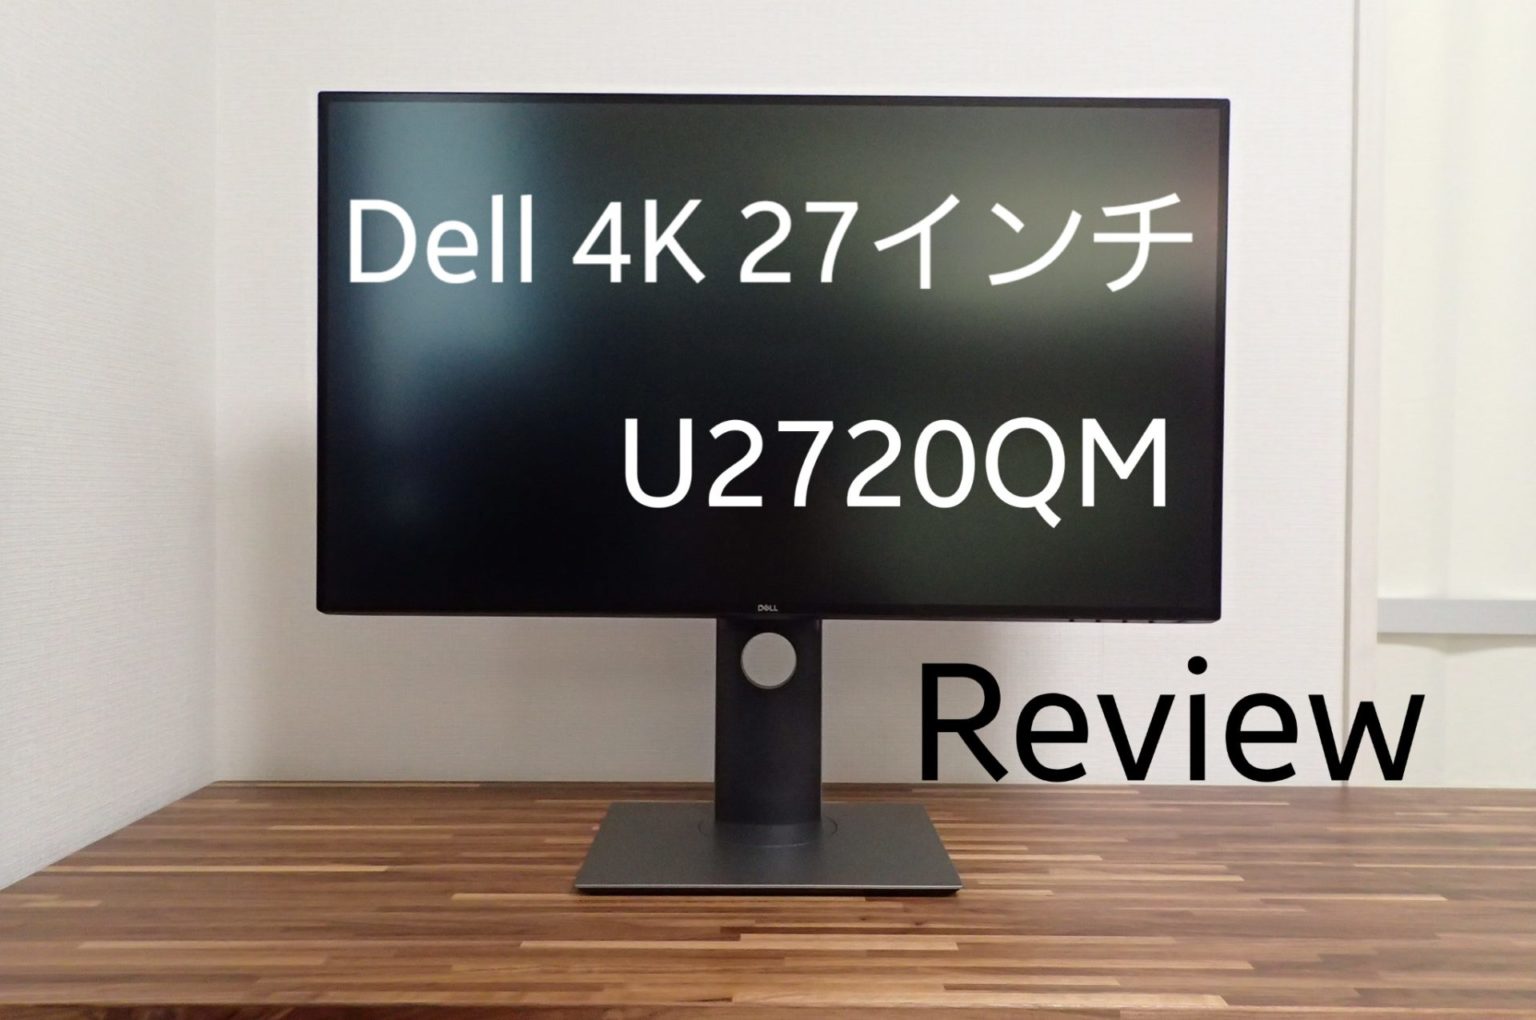 【4K 27インチの最適解】Dell U2720QM レビュー【テレワークにもおすすめ】 - Tip Gadget